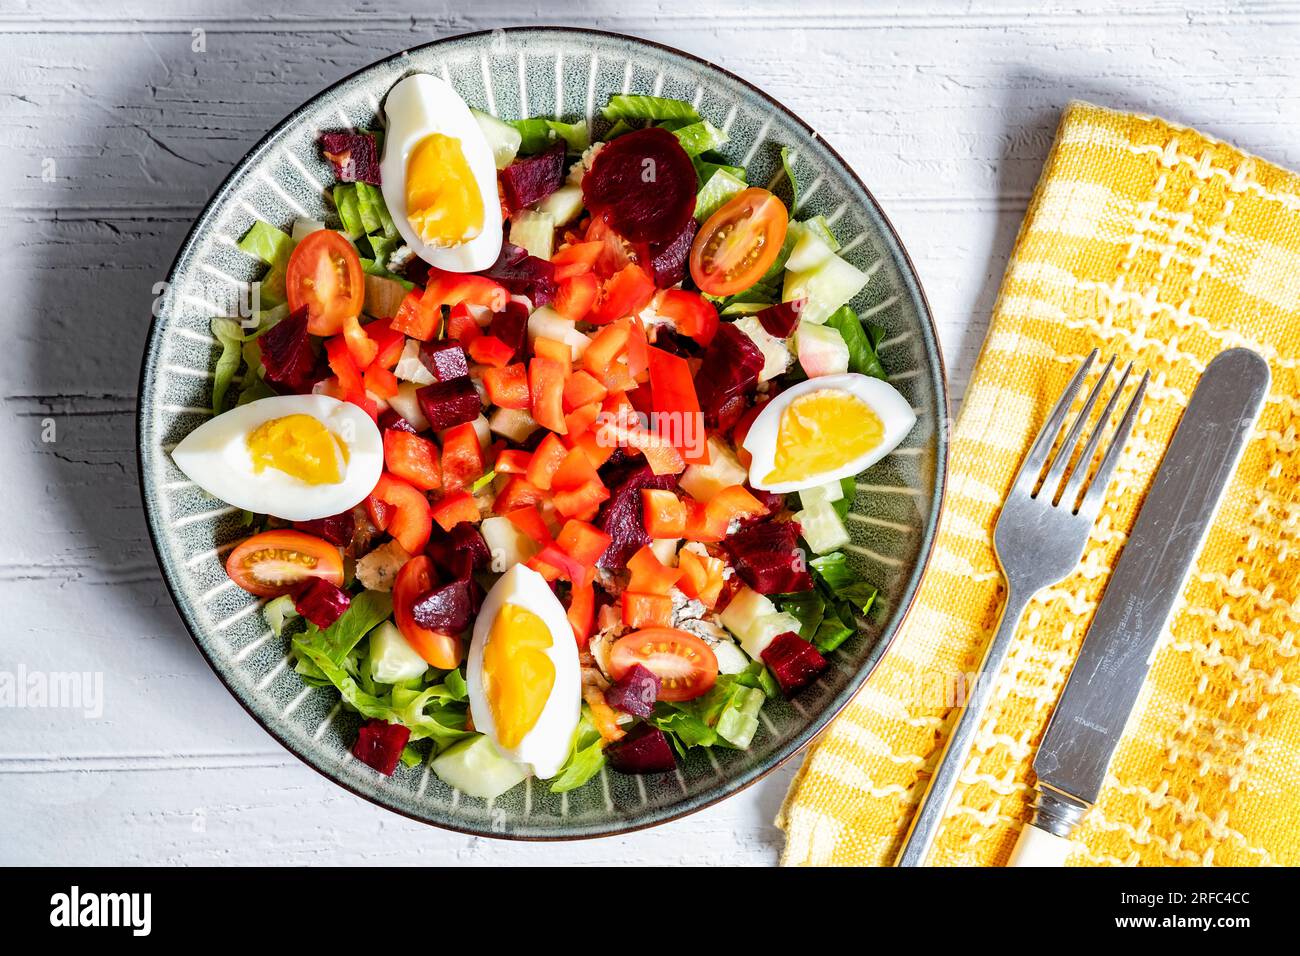 Una saludable ensalada de dieta mediterránea servida en un tazón que contiene ingredientes de ensalada de colores como remolacha de pimientos de tomate, huevos y lechuga. Foto de stock